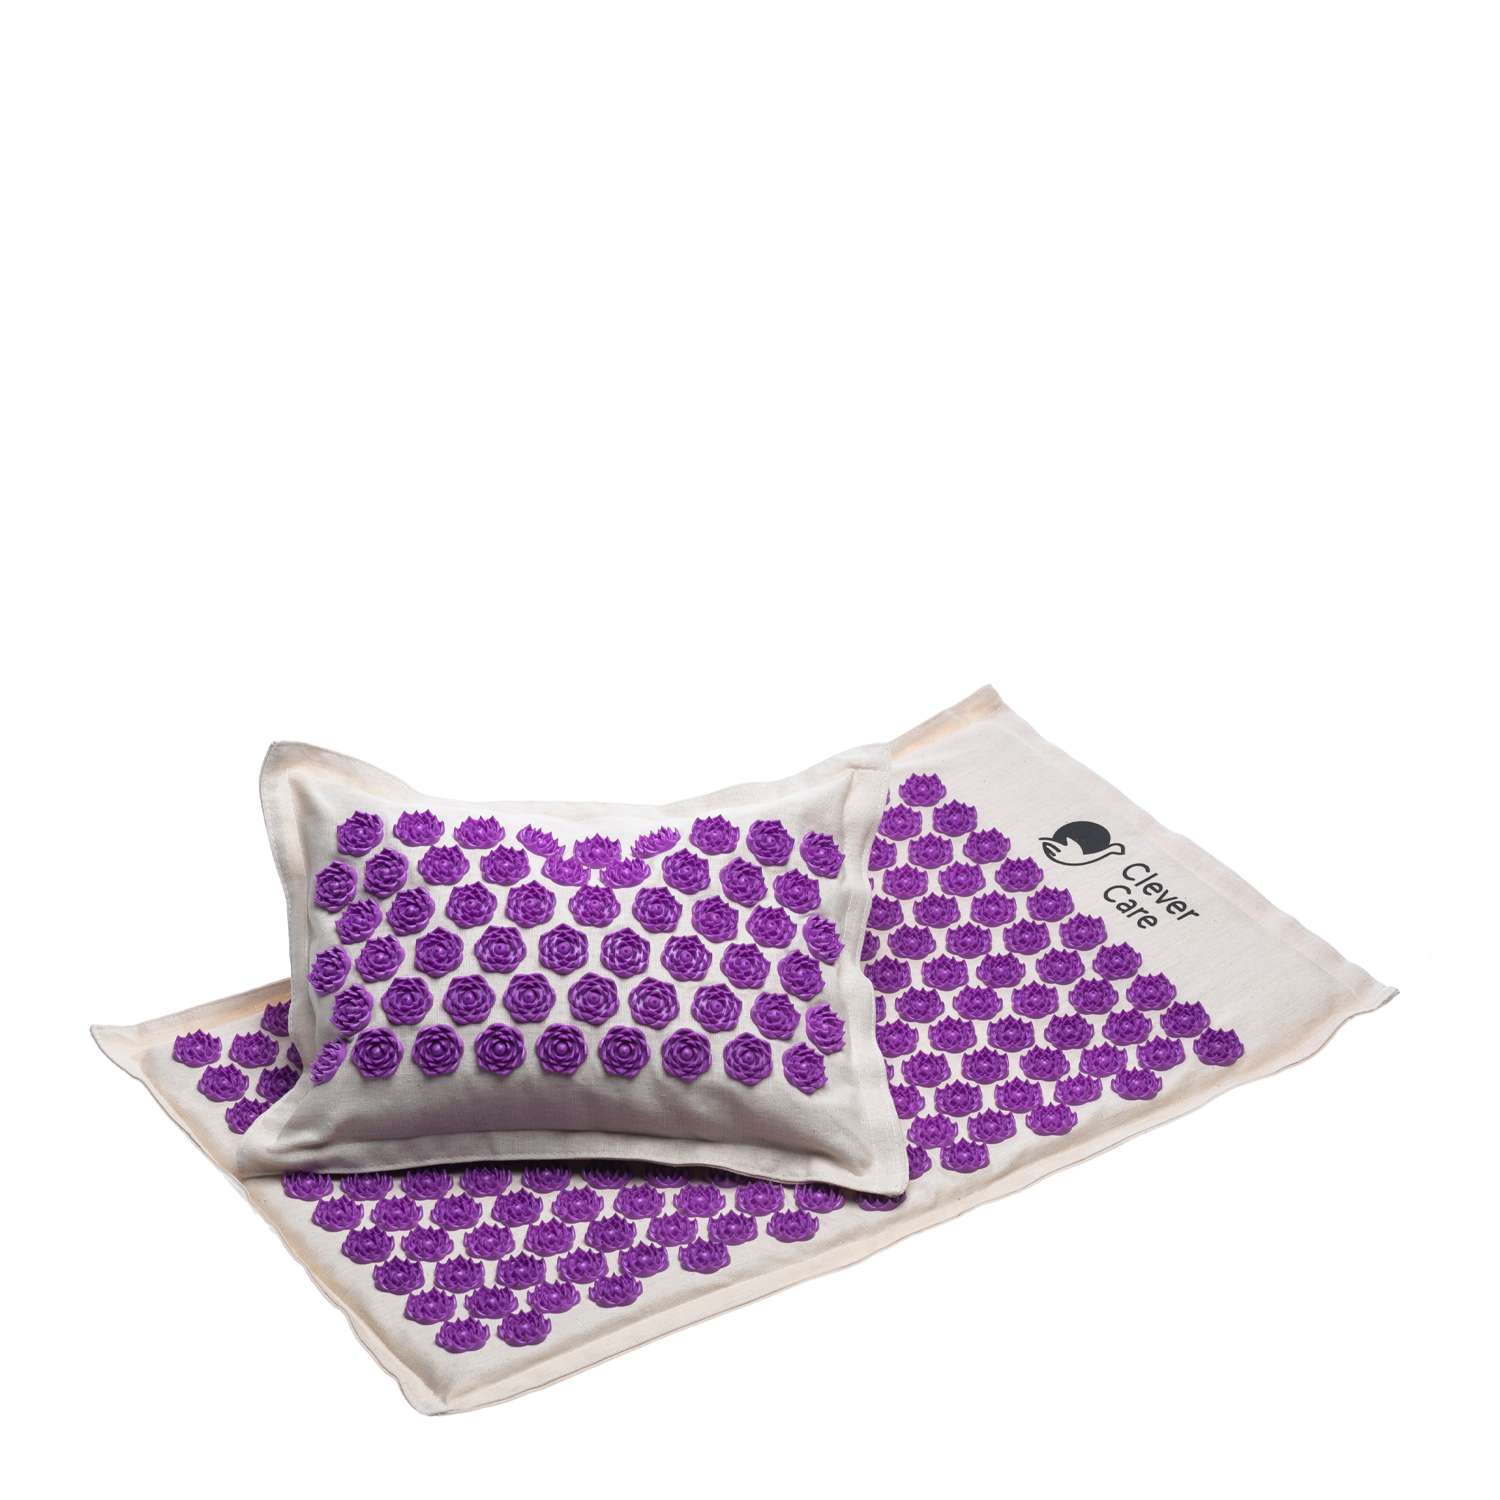 Набор: коврик и подушка CleverCare акупунктурные с сумкой для хранения и переноски цвет бежевый с сиреневым - фото 2